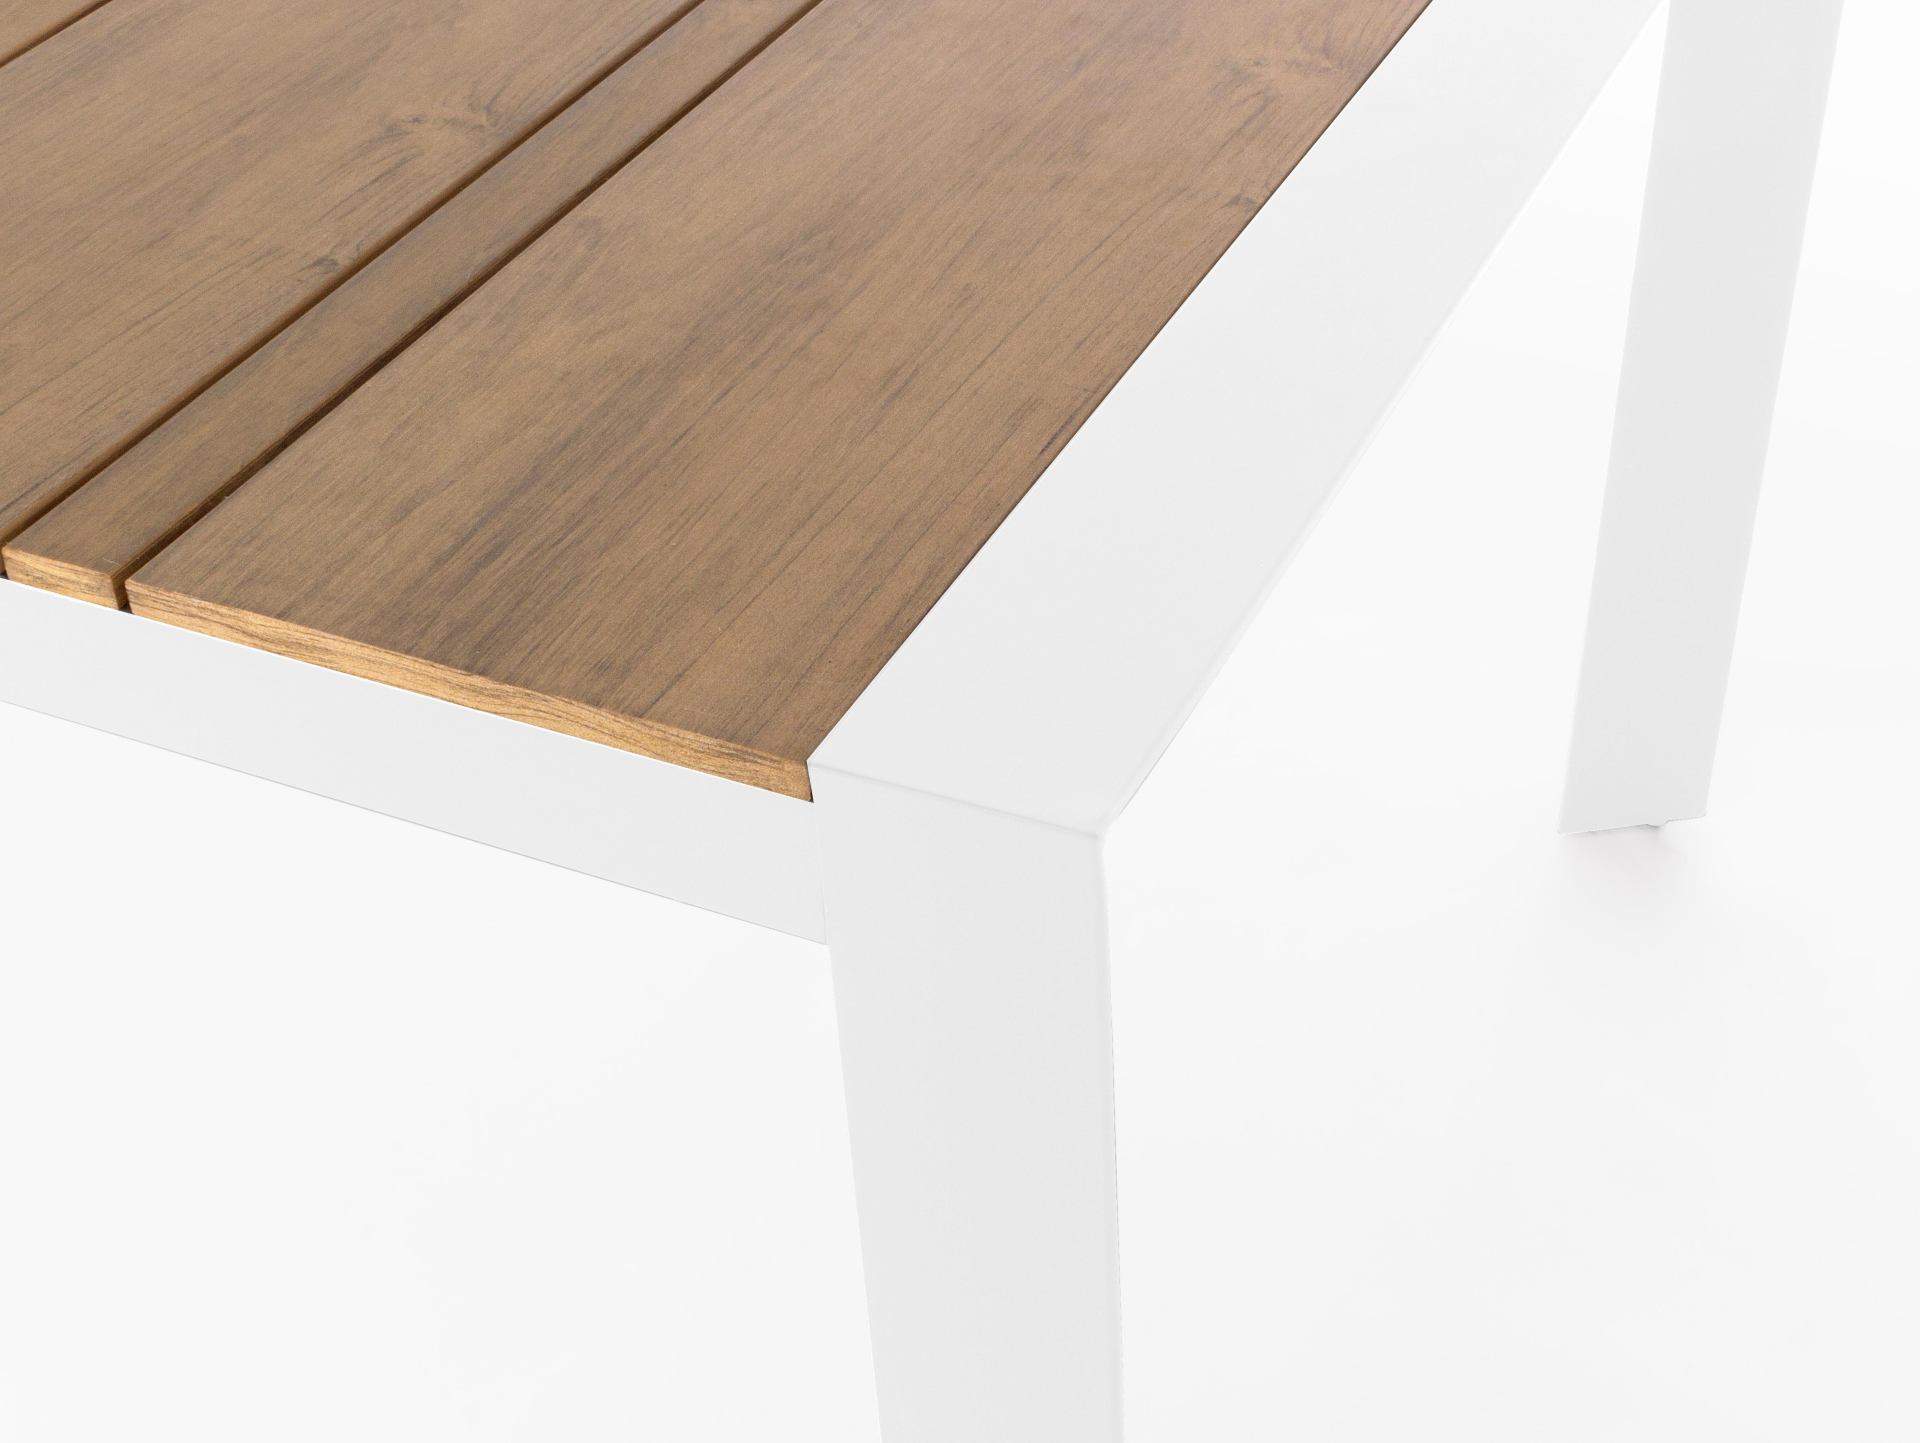 Der Gartentisch Elias überzeugt mit seinem modernen Design. Gefertigt wurde er aus Polwood, welches einen natürlichen Farbton besitzt. Das Gestell ist aus auch Aluminium und hat eine weiße Farbe. Der Tisch verfügt über eine Länge von 198 cm und ist für de